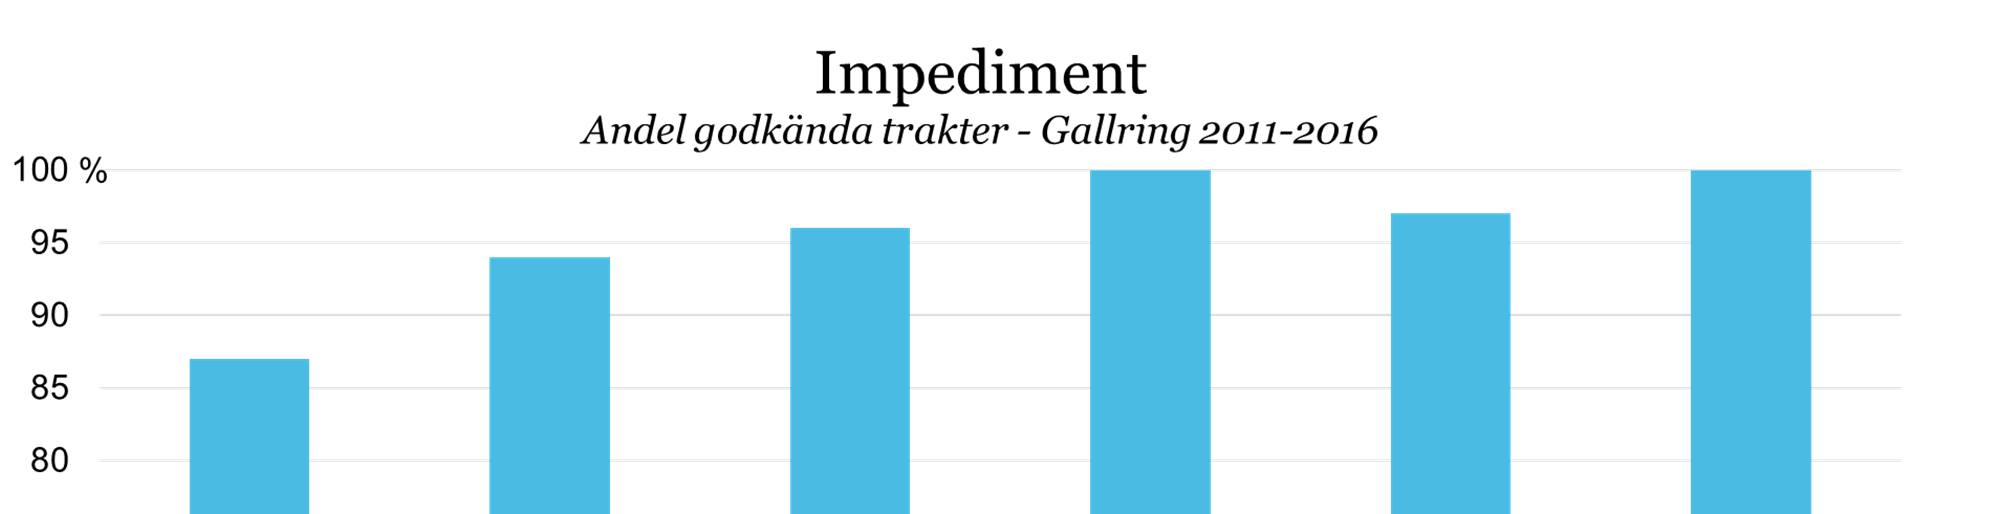 27 (40) 4.2.6. Gallring - Impediment Av 2016 års totalareal i boksluten består 0,6 ha av impediment. På 21 av trakterna har impediment bedömts. 100 % av trakterna fick godkänt.